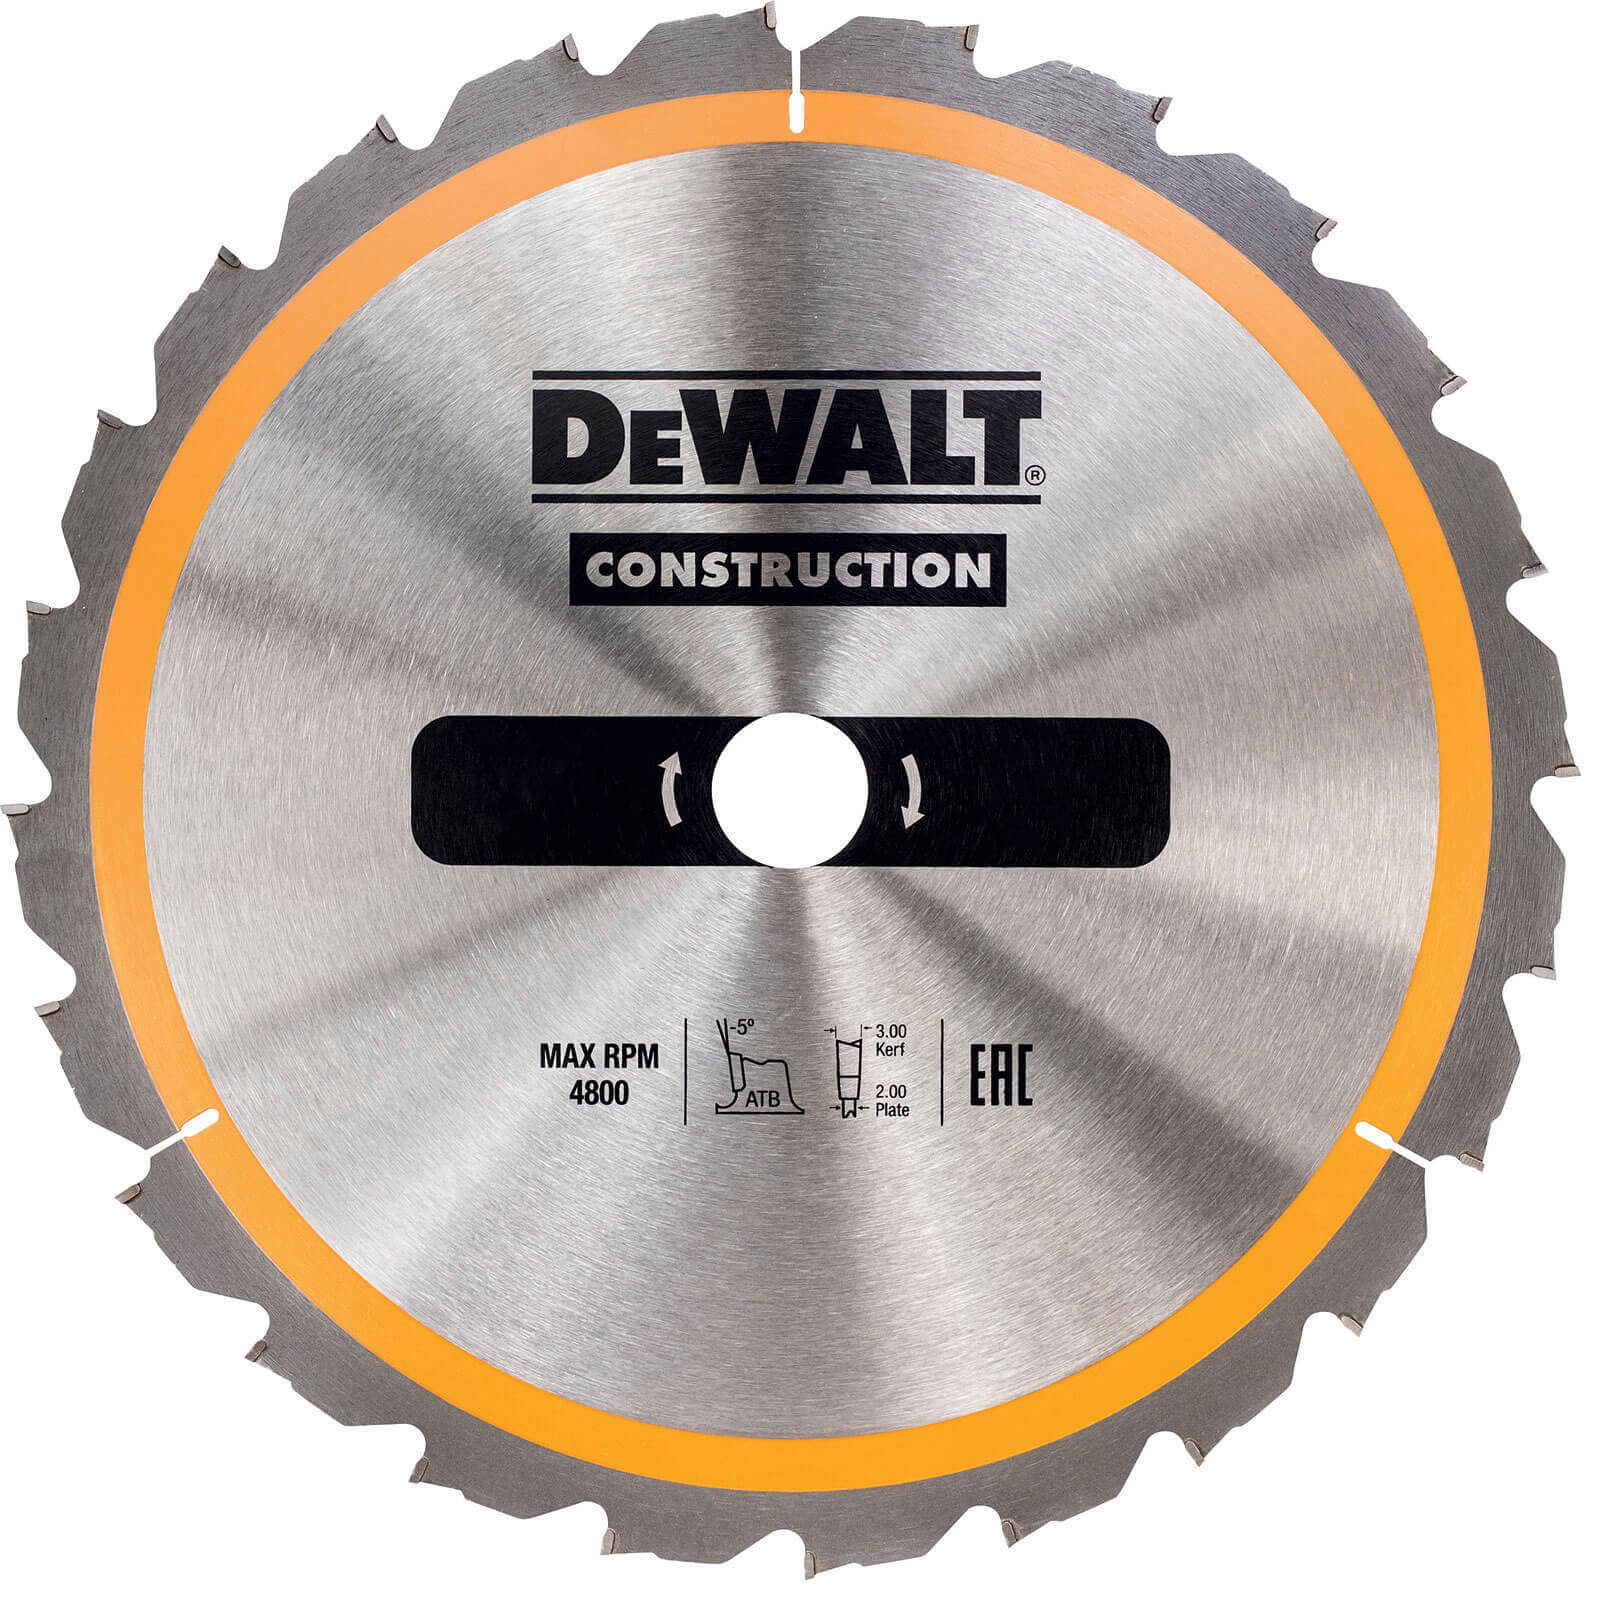 Photo of Dewalt Construction Circular Saw Blade 190mm 40t 30mm